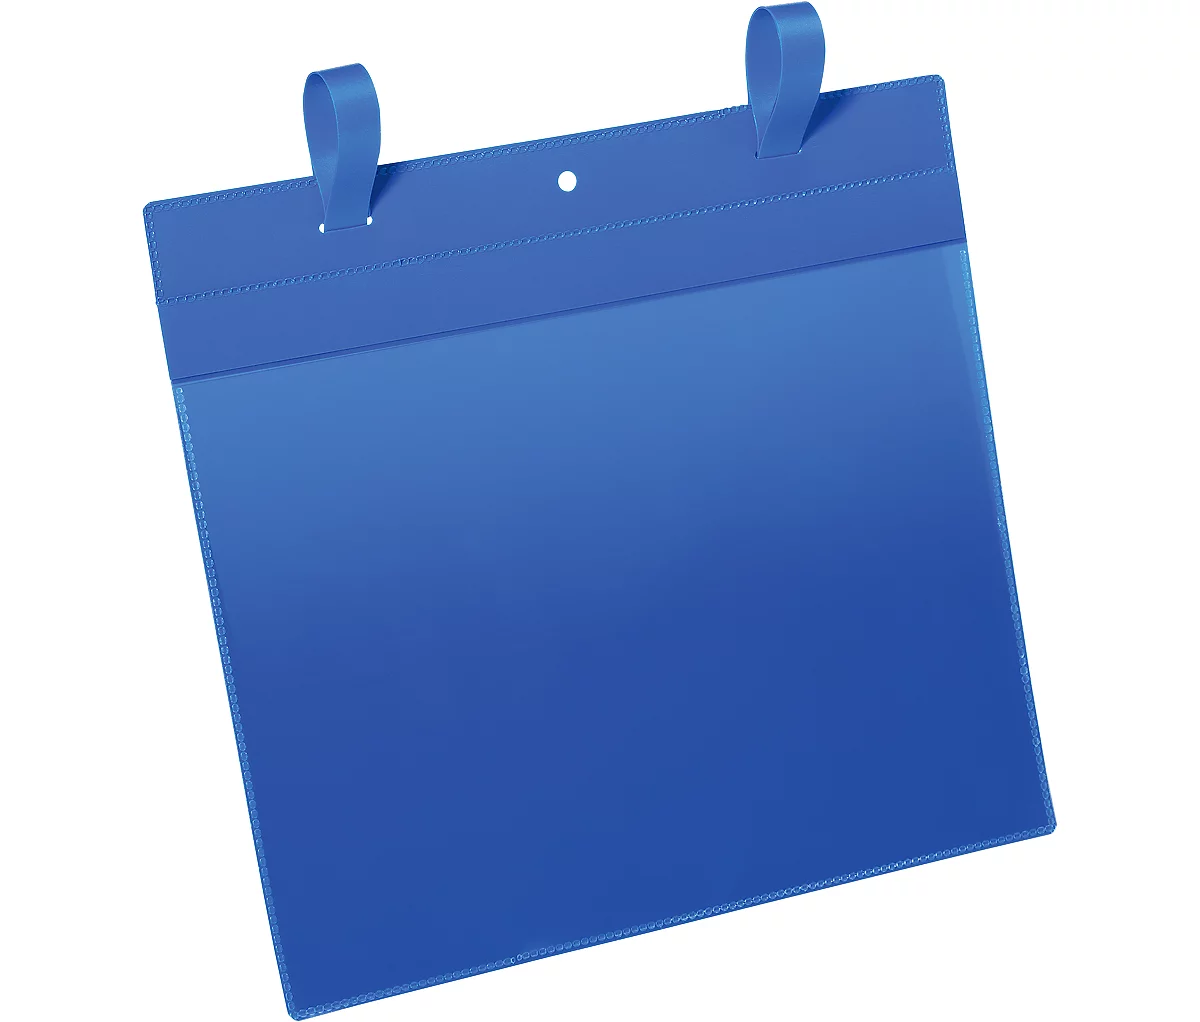 Fundas de documento con solapa, An 297 x Al 210 mm (A4 transversal), 50 unidades, azul